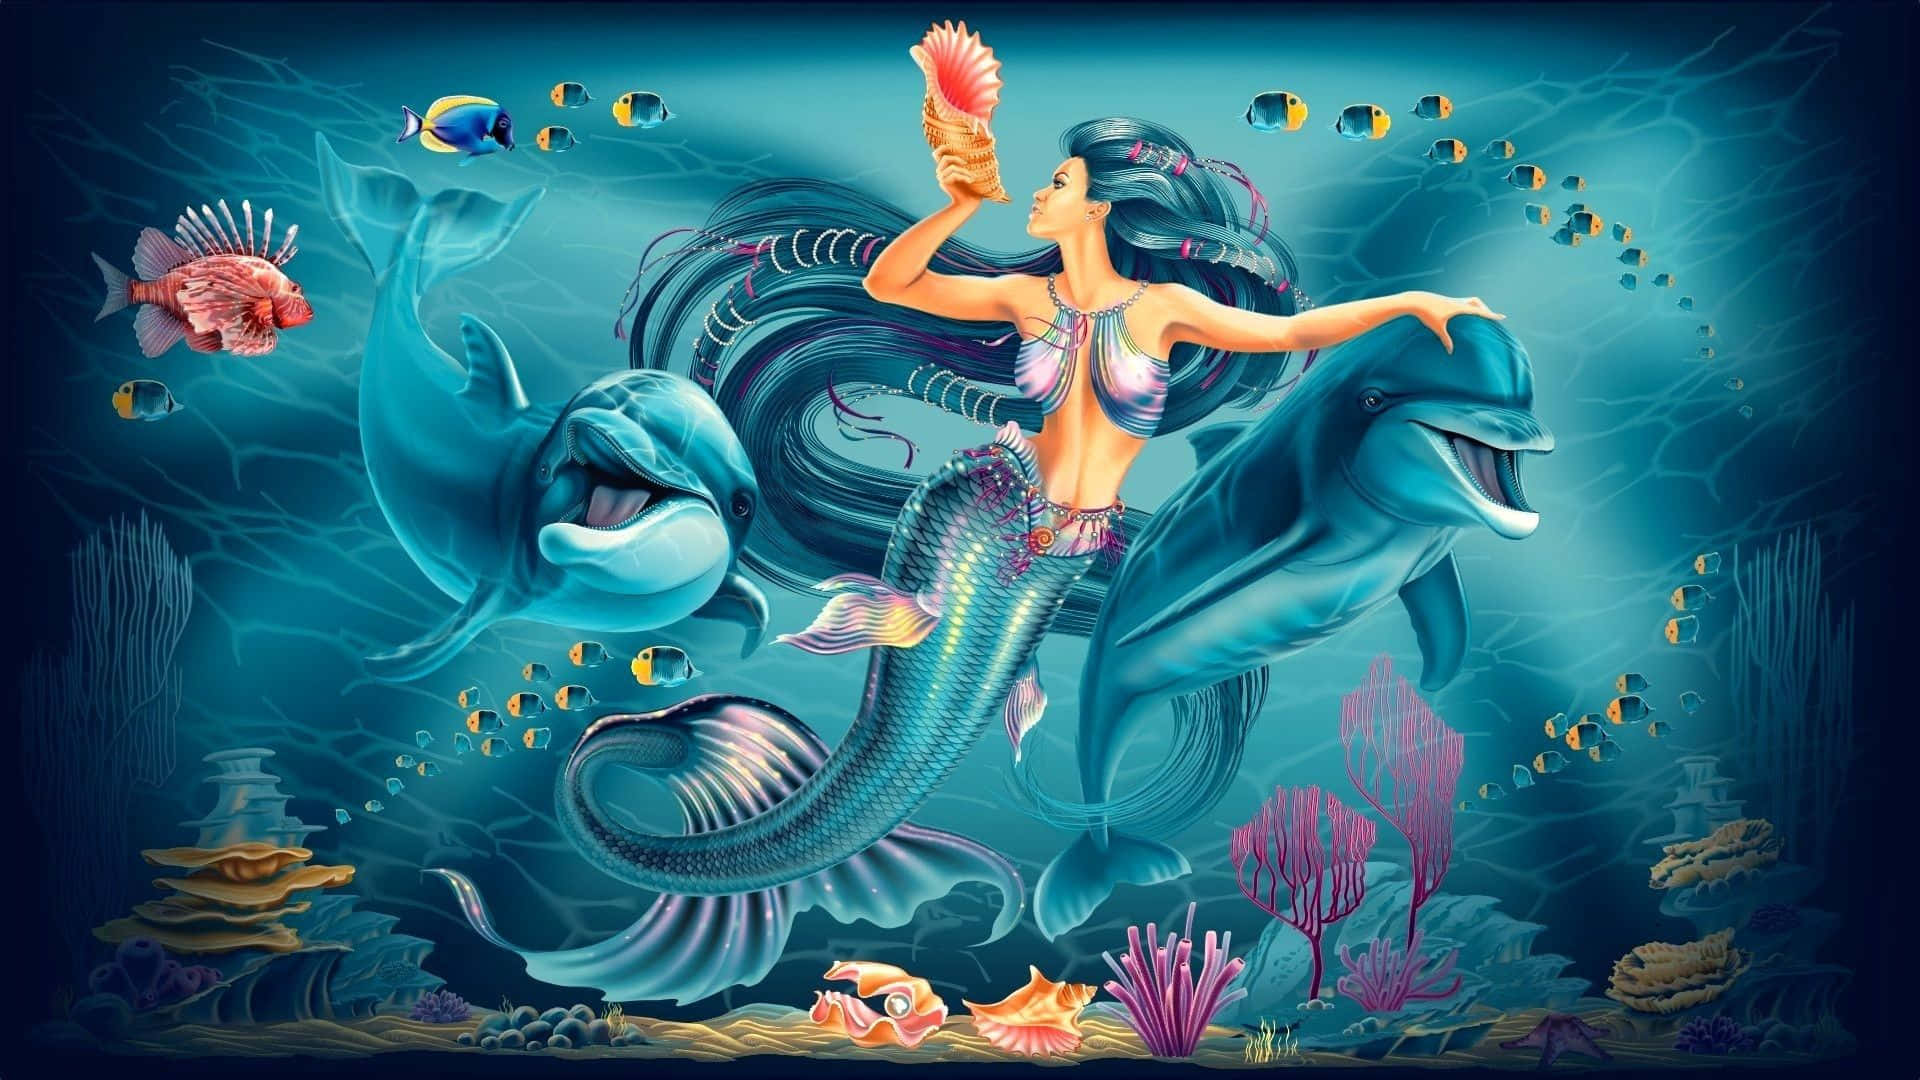 Imagemde Golfinhos Azul-mermaid.